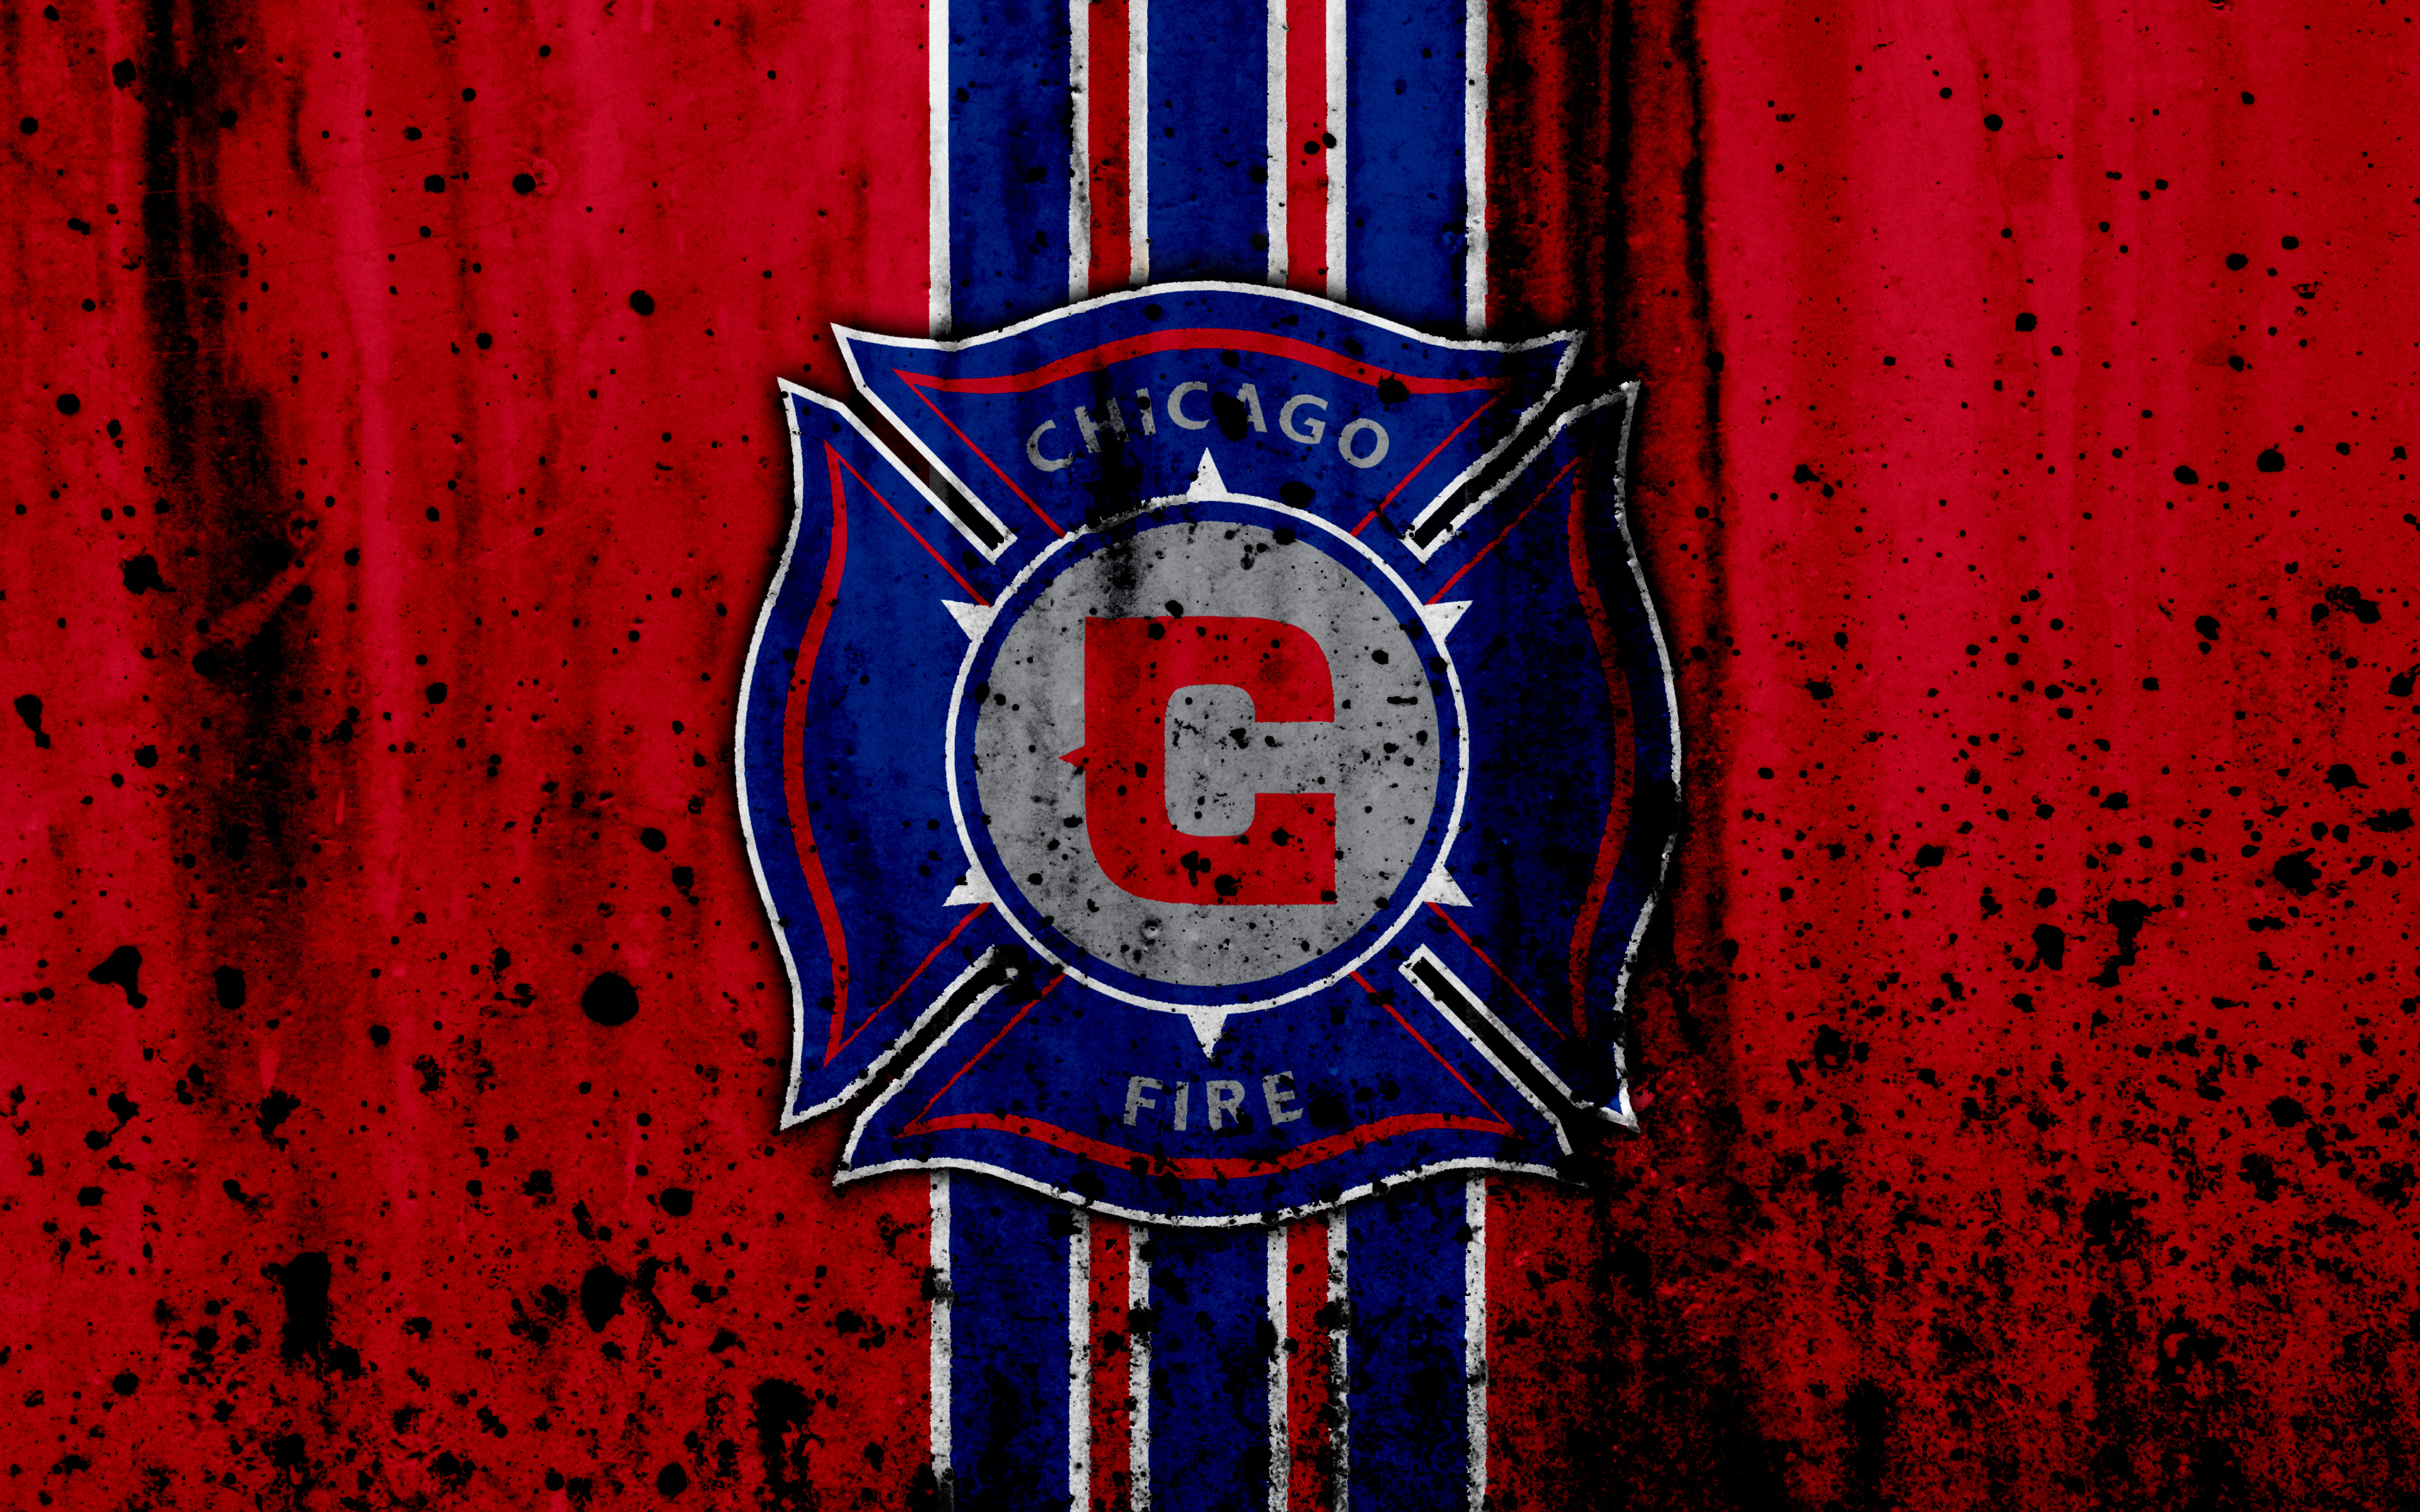 Chicago Fire FC 4k Ultra HD Wallpaper